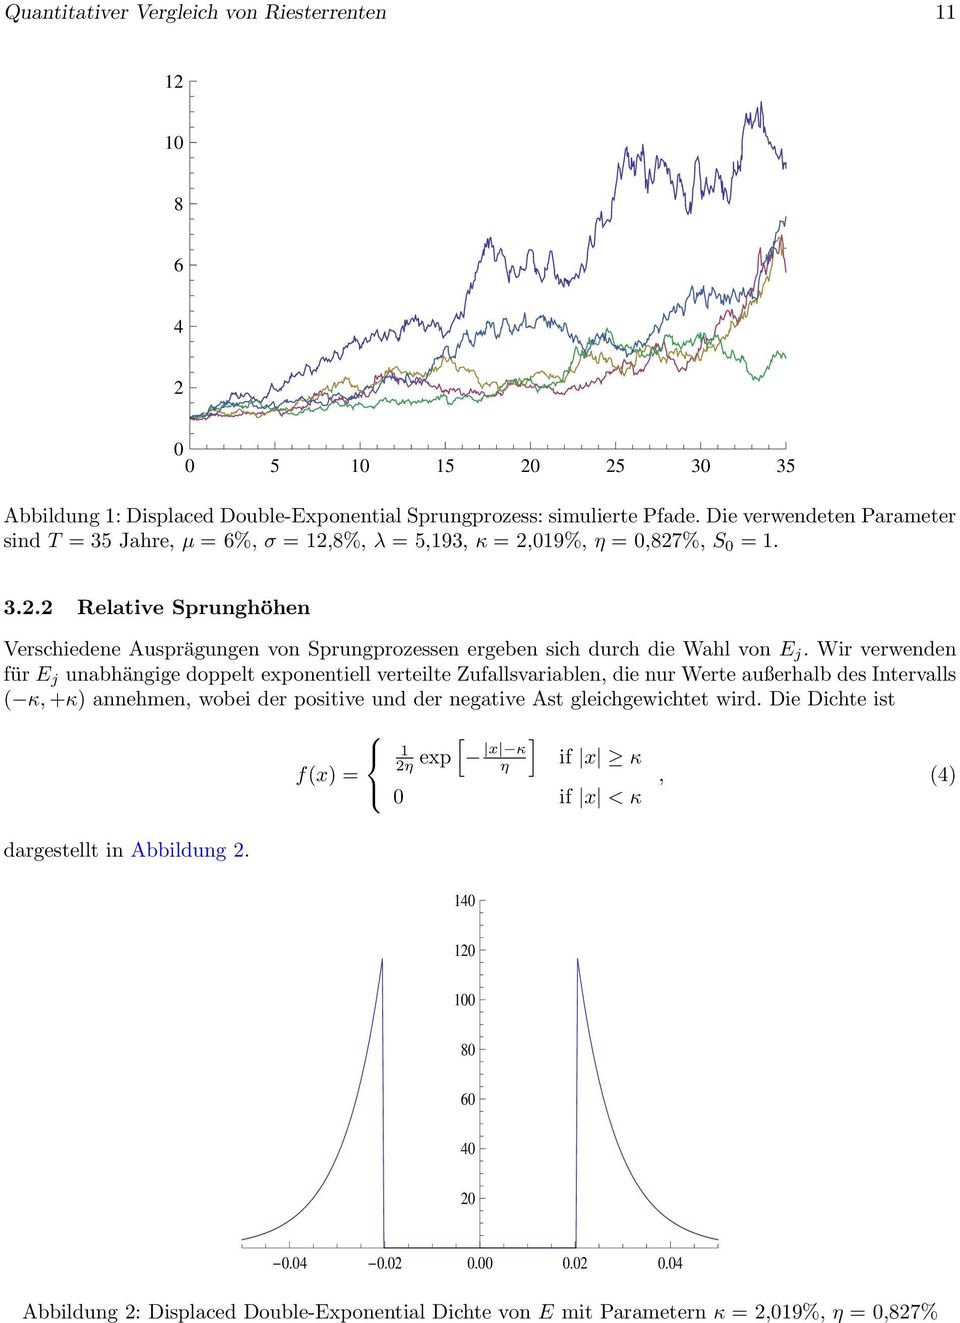 unabhängige doppelt exponentiell verteilte Zufallsvariablen, die nur Werte außerhalb des Intervalls ( κ, +κ) annehmen, wobei der positive und der negative Ast gleichgewichtet wird Die Dichte ist